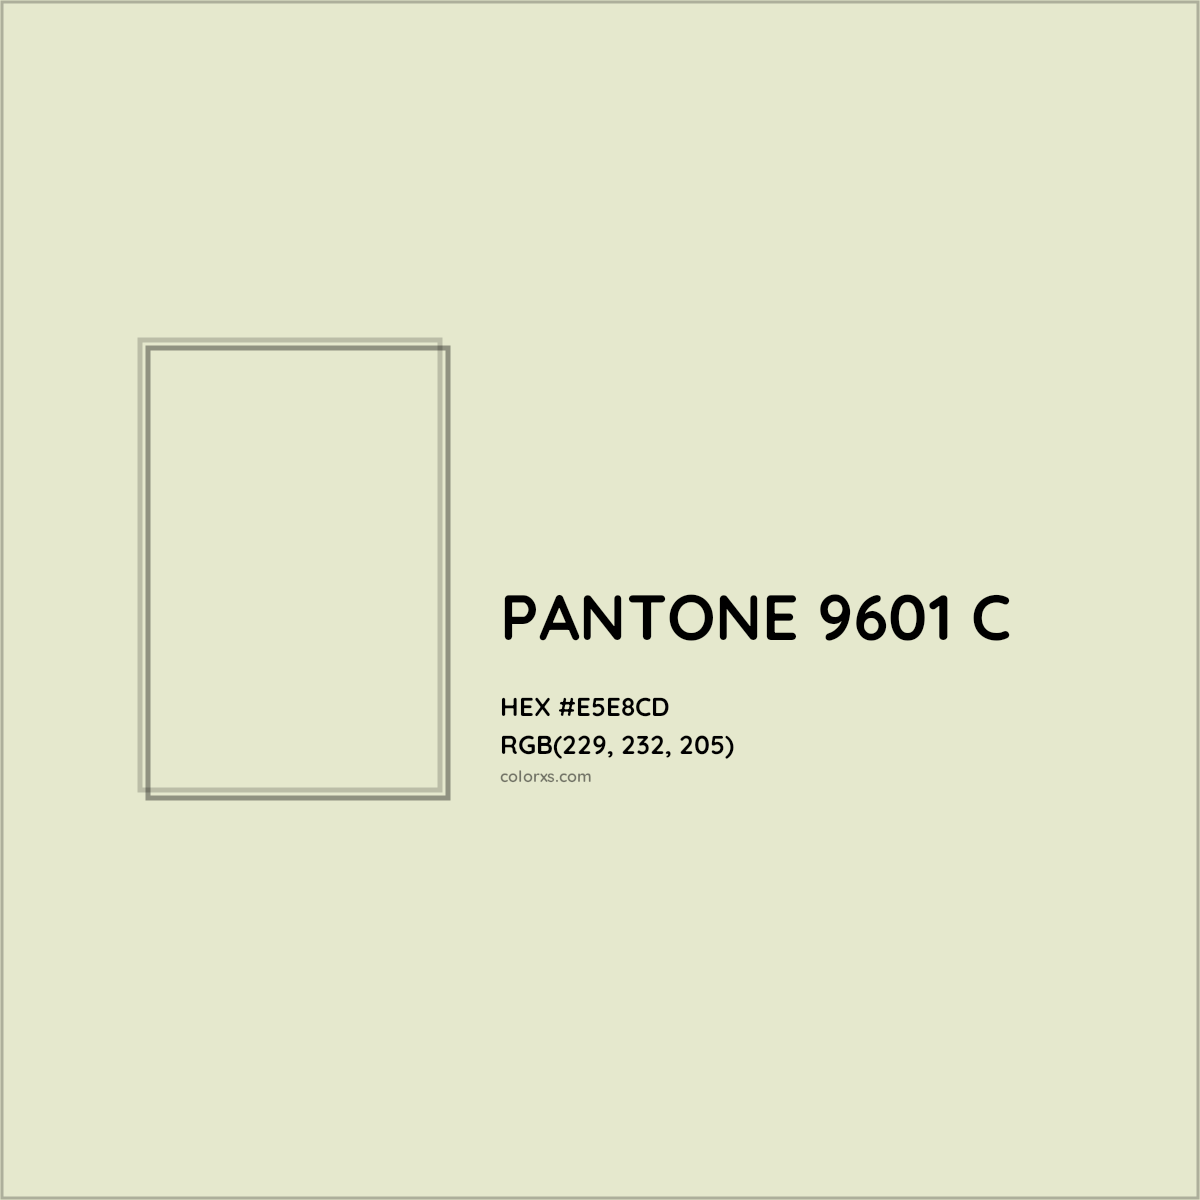 HEX #E5E8CD PANTONE 9601 C CMS Pantone PMS - Color Code